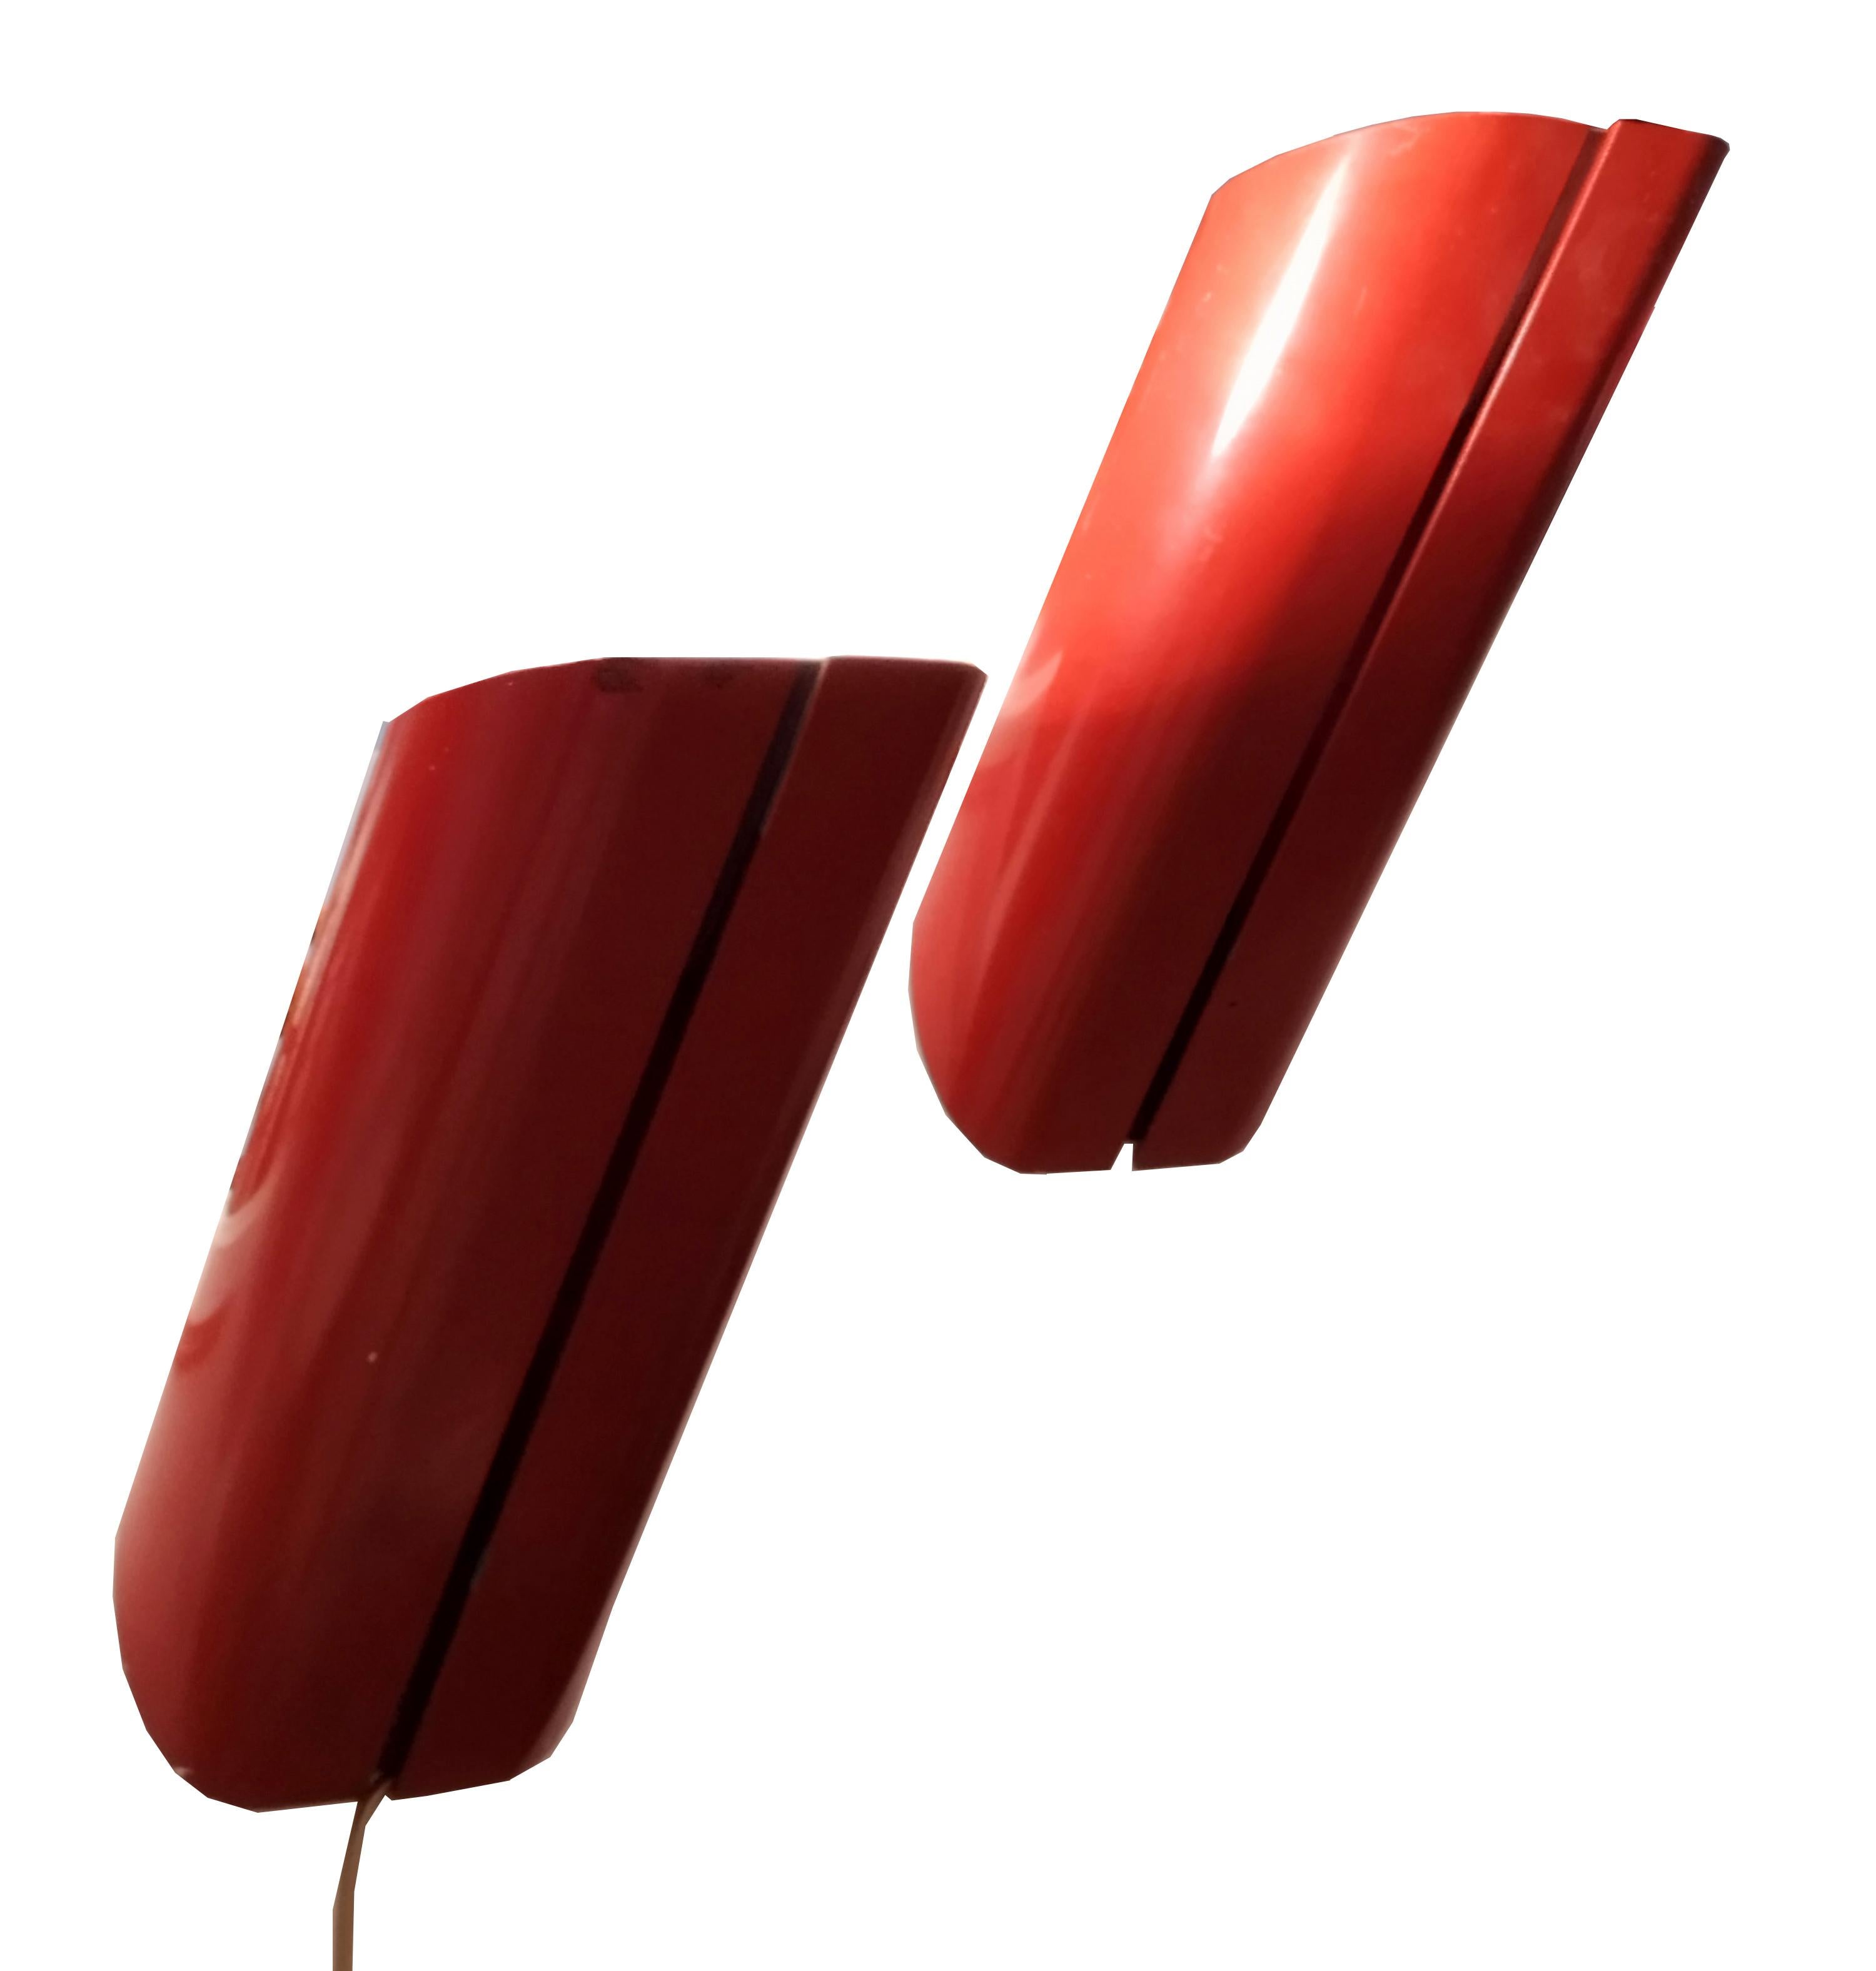 Conçue à la fin des années 1970 par Gianfranco Frattini, Megaron est une applique au look minimal composée d'un tube en aluminium laqué rouge bordeaux et d'une base en acier résiné.
Source lumineuse : 1 ampoule halogène tubulaire max. 300W. - Prise